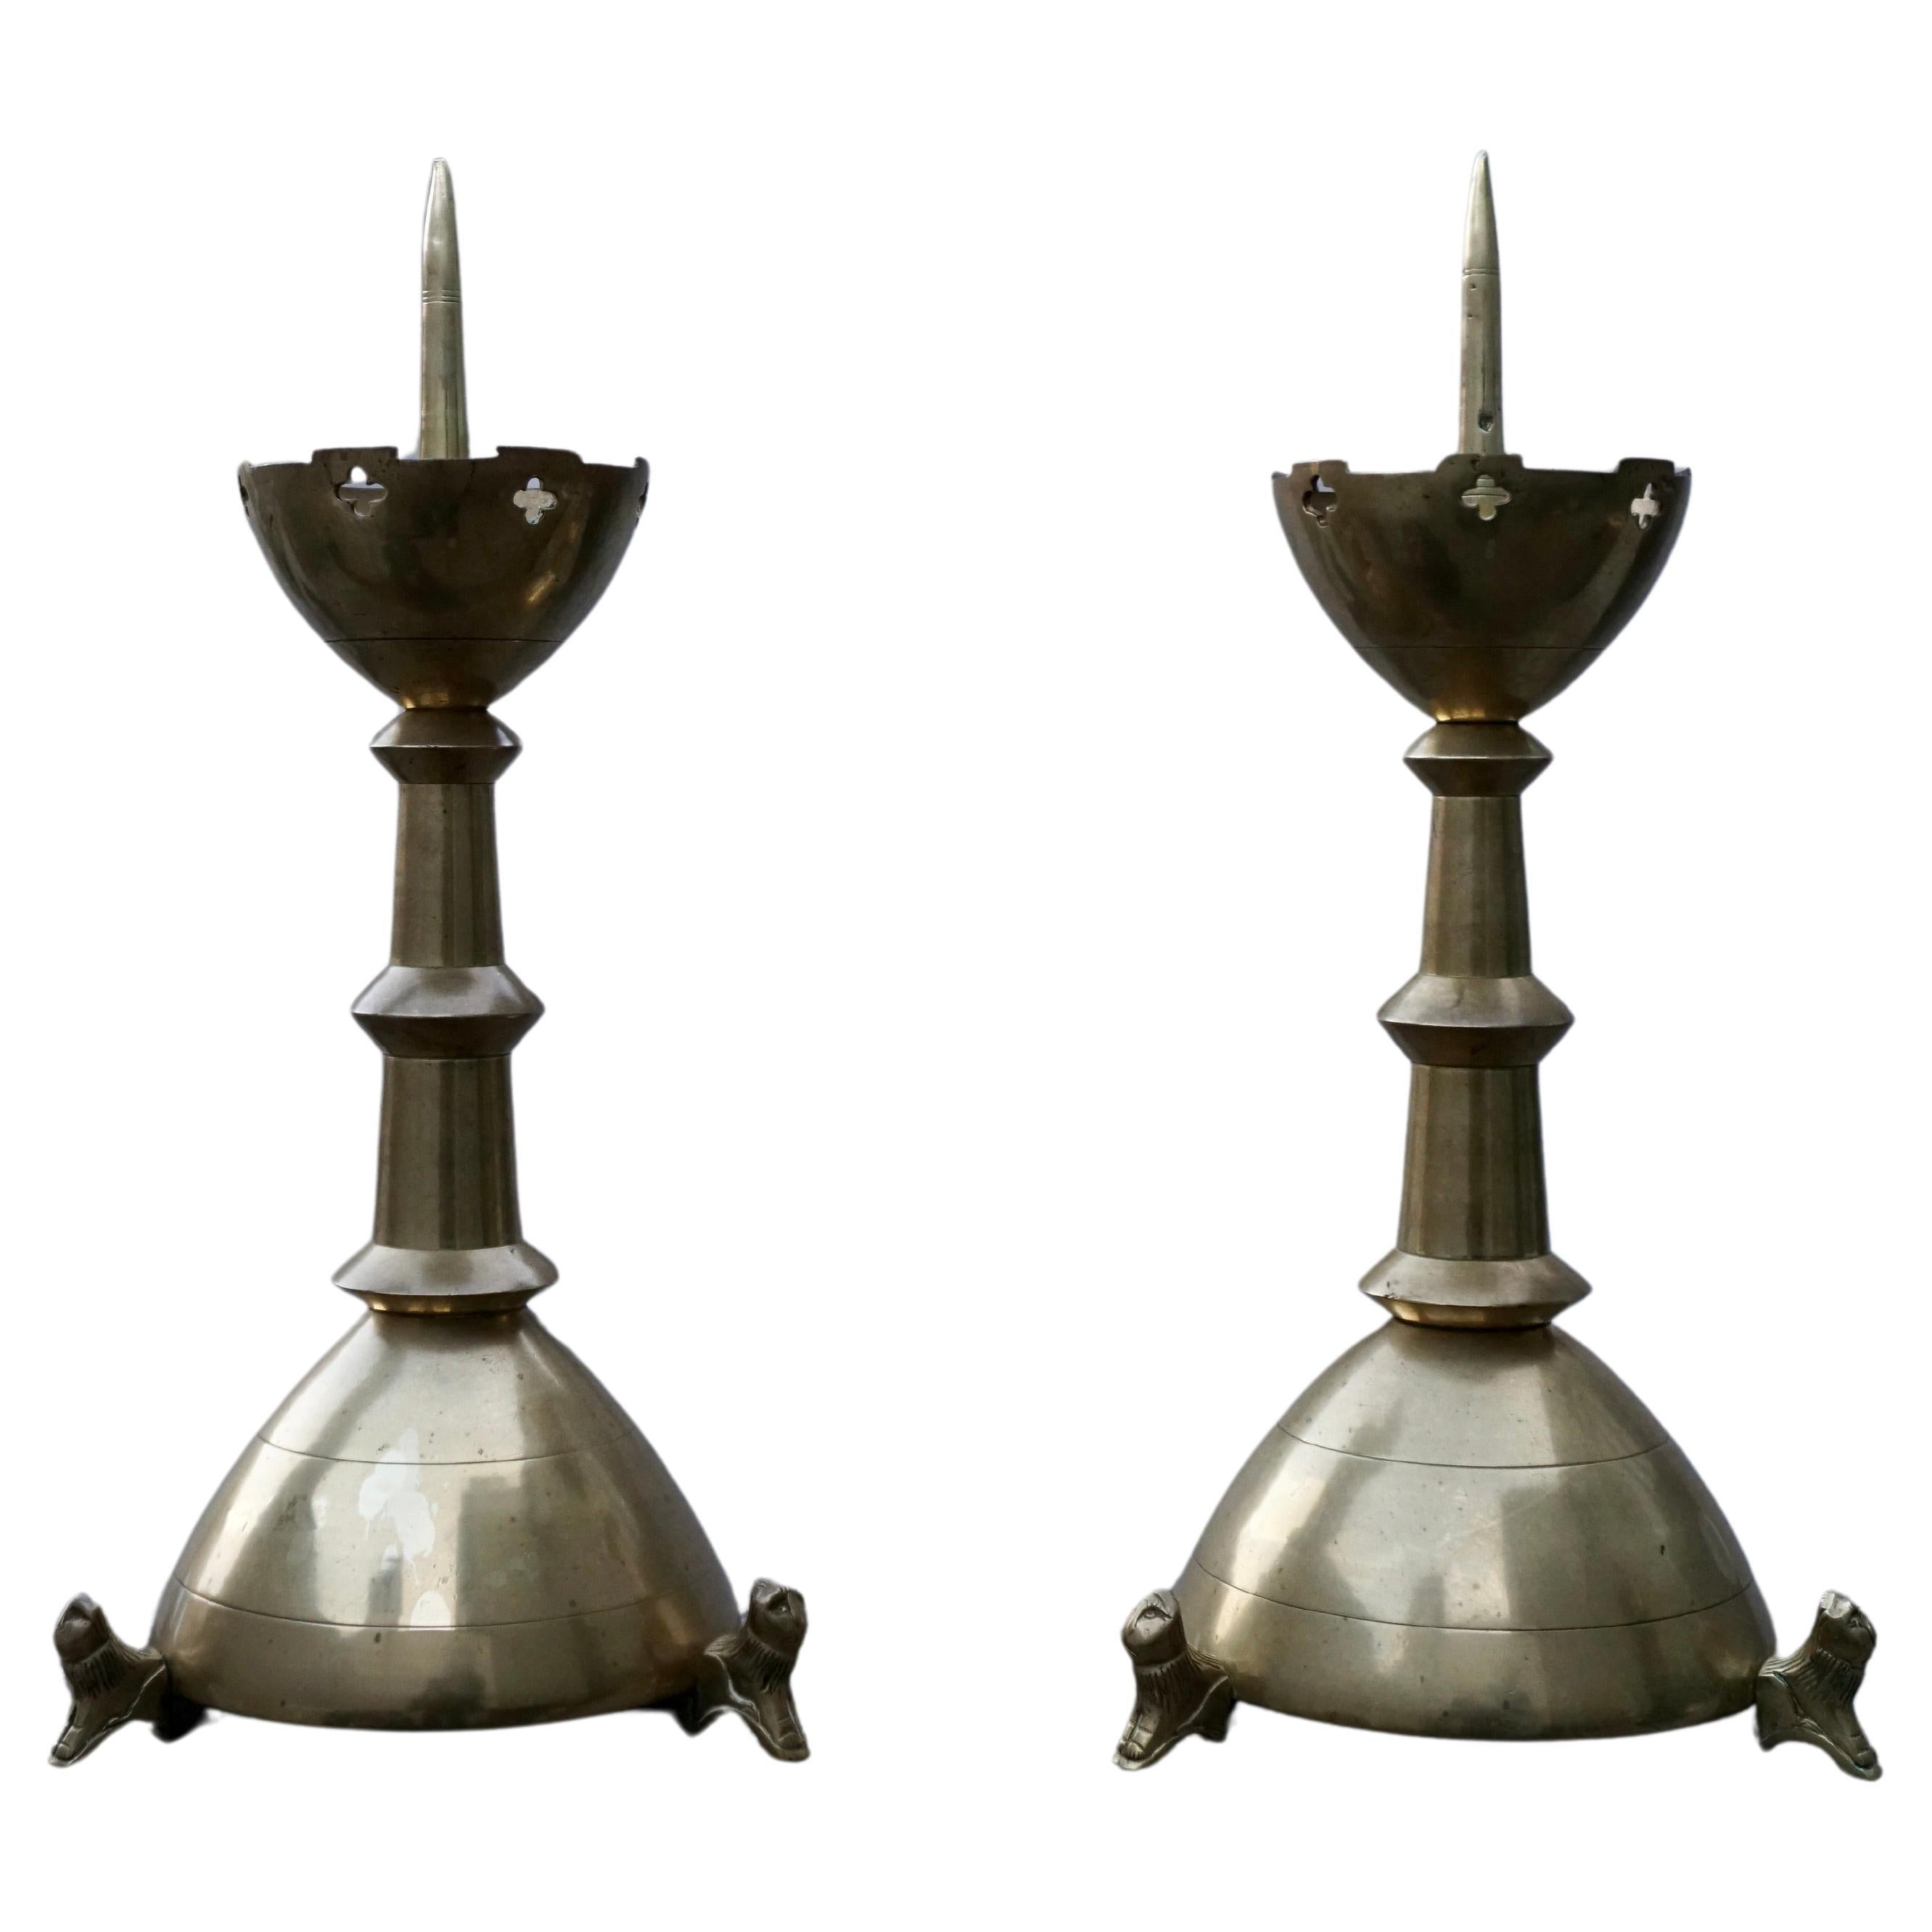 Paar vergoldete Bronze-Kerzenständer im gotischen Stil, neugotisches Revival, Altar, Pricket, w. Löwen-Skulpturen